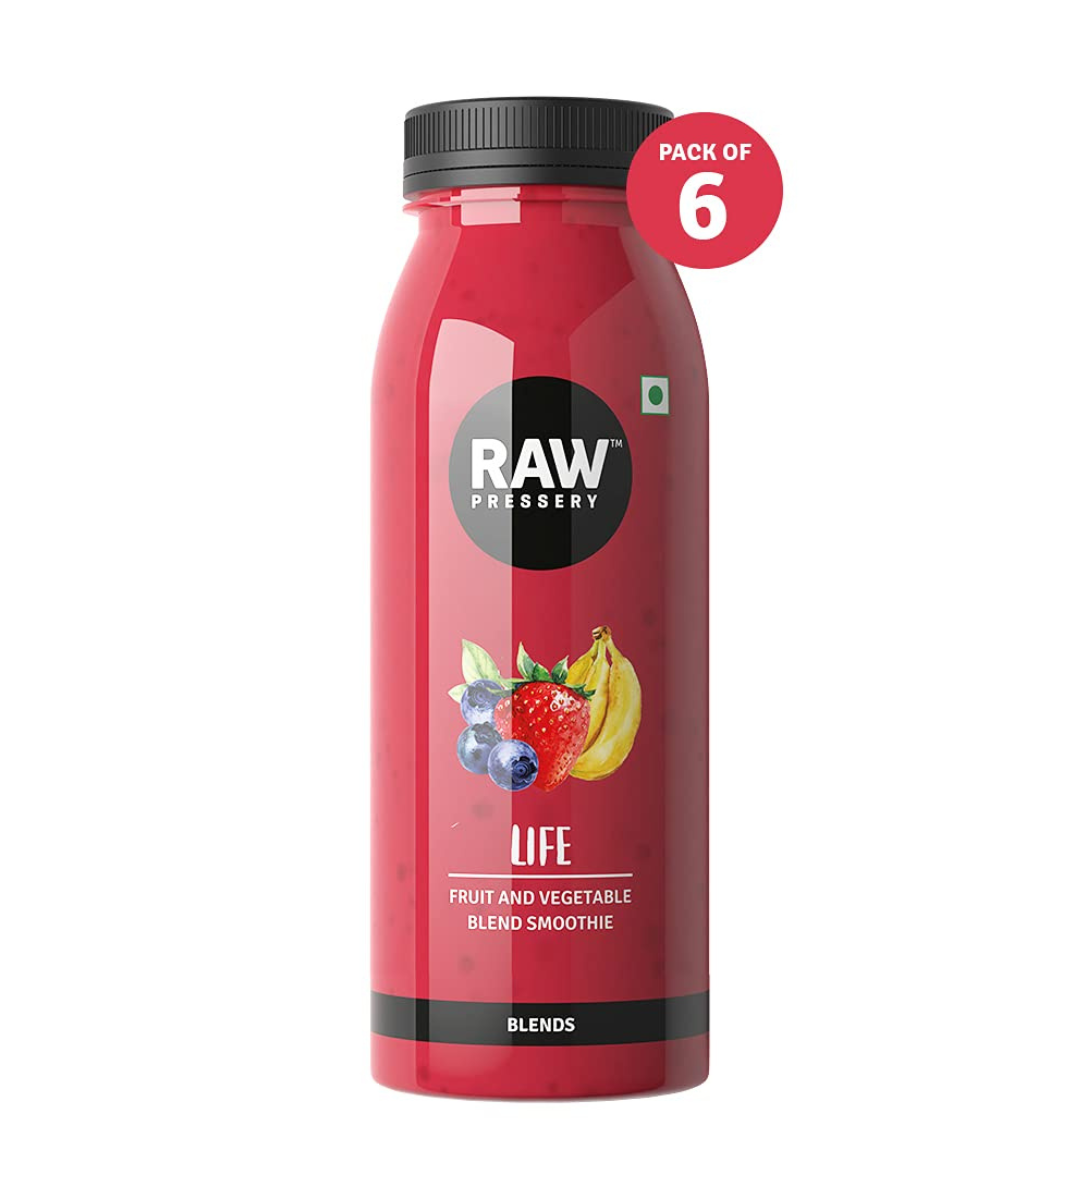 Raw Pressery Strawberry Banana Berry Smoothie - Life Juice (6 x 250ml)